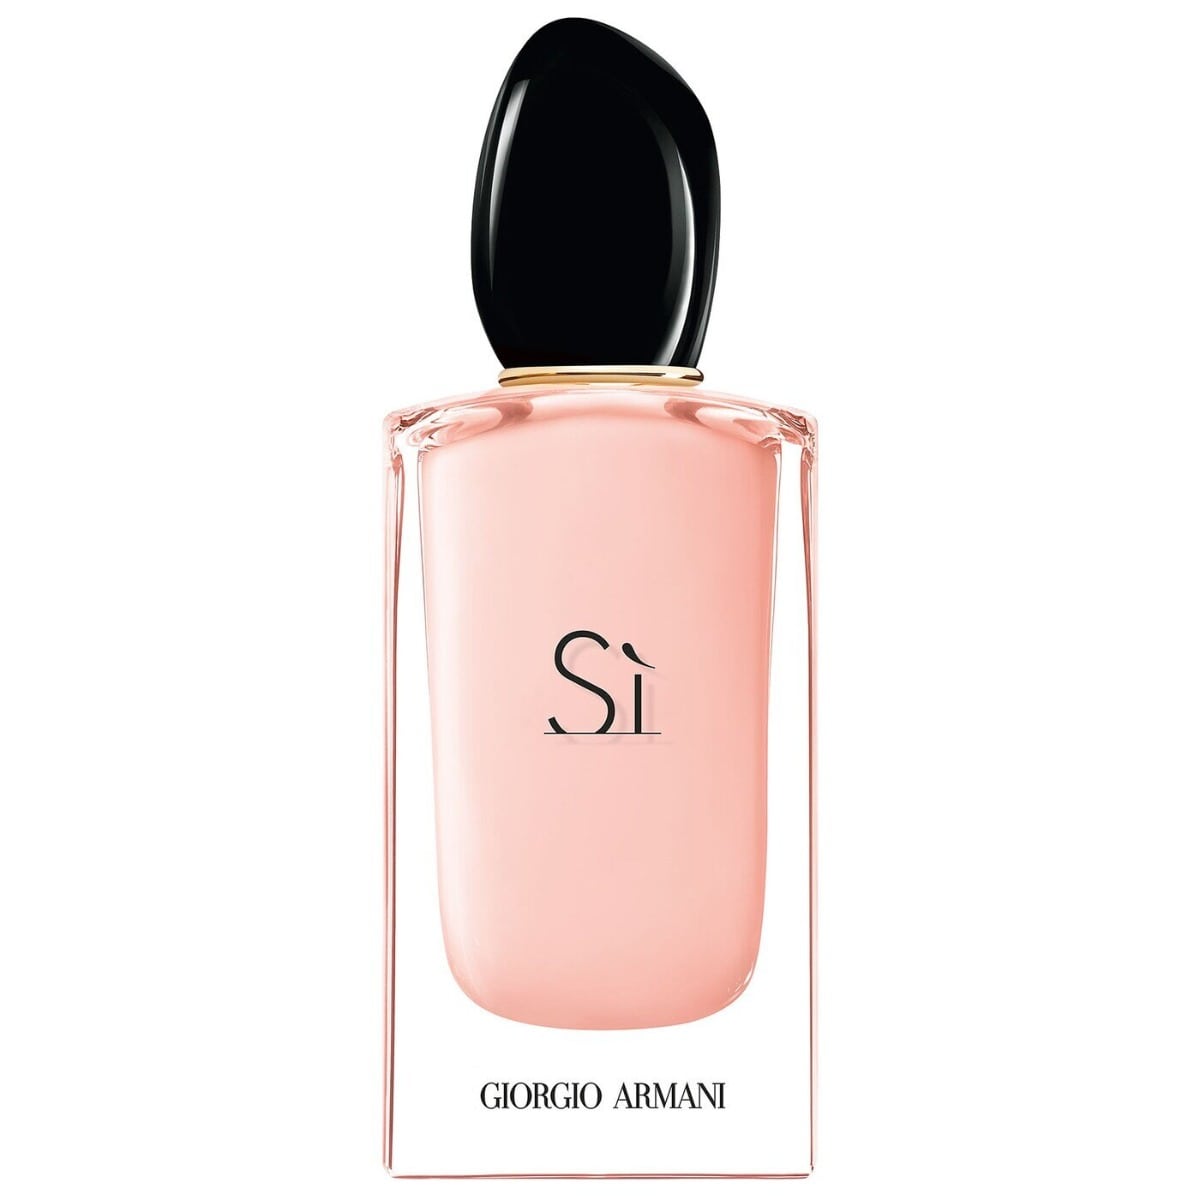 Giorgio Armani Si Fiori Edp Spray For Women 100 ml-Perfume - Allurebeautypk